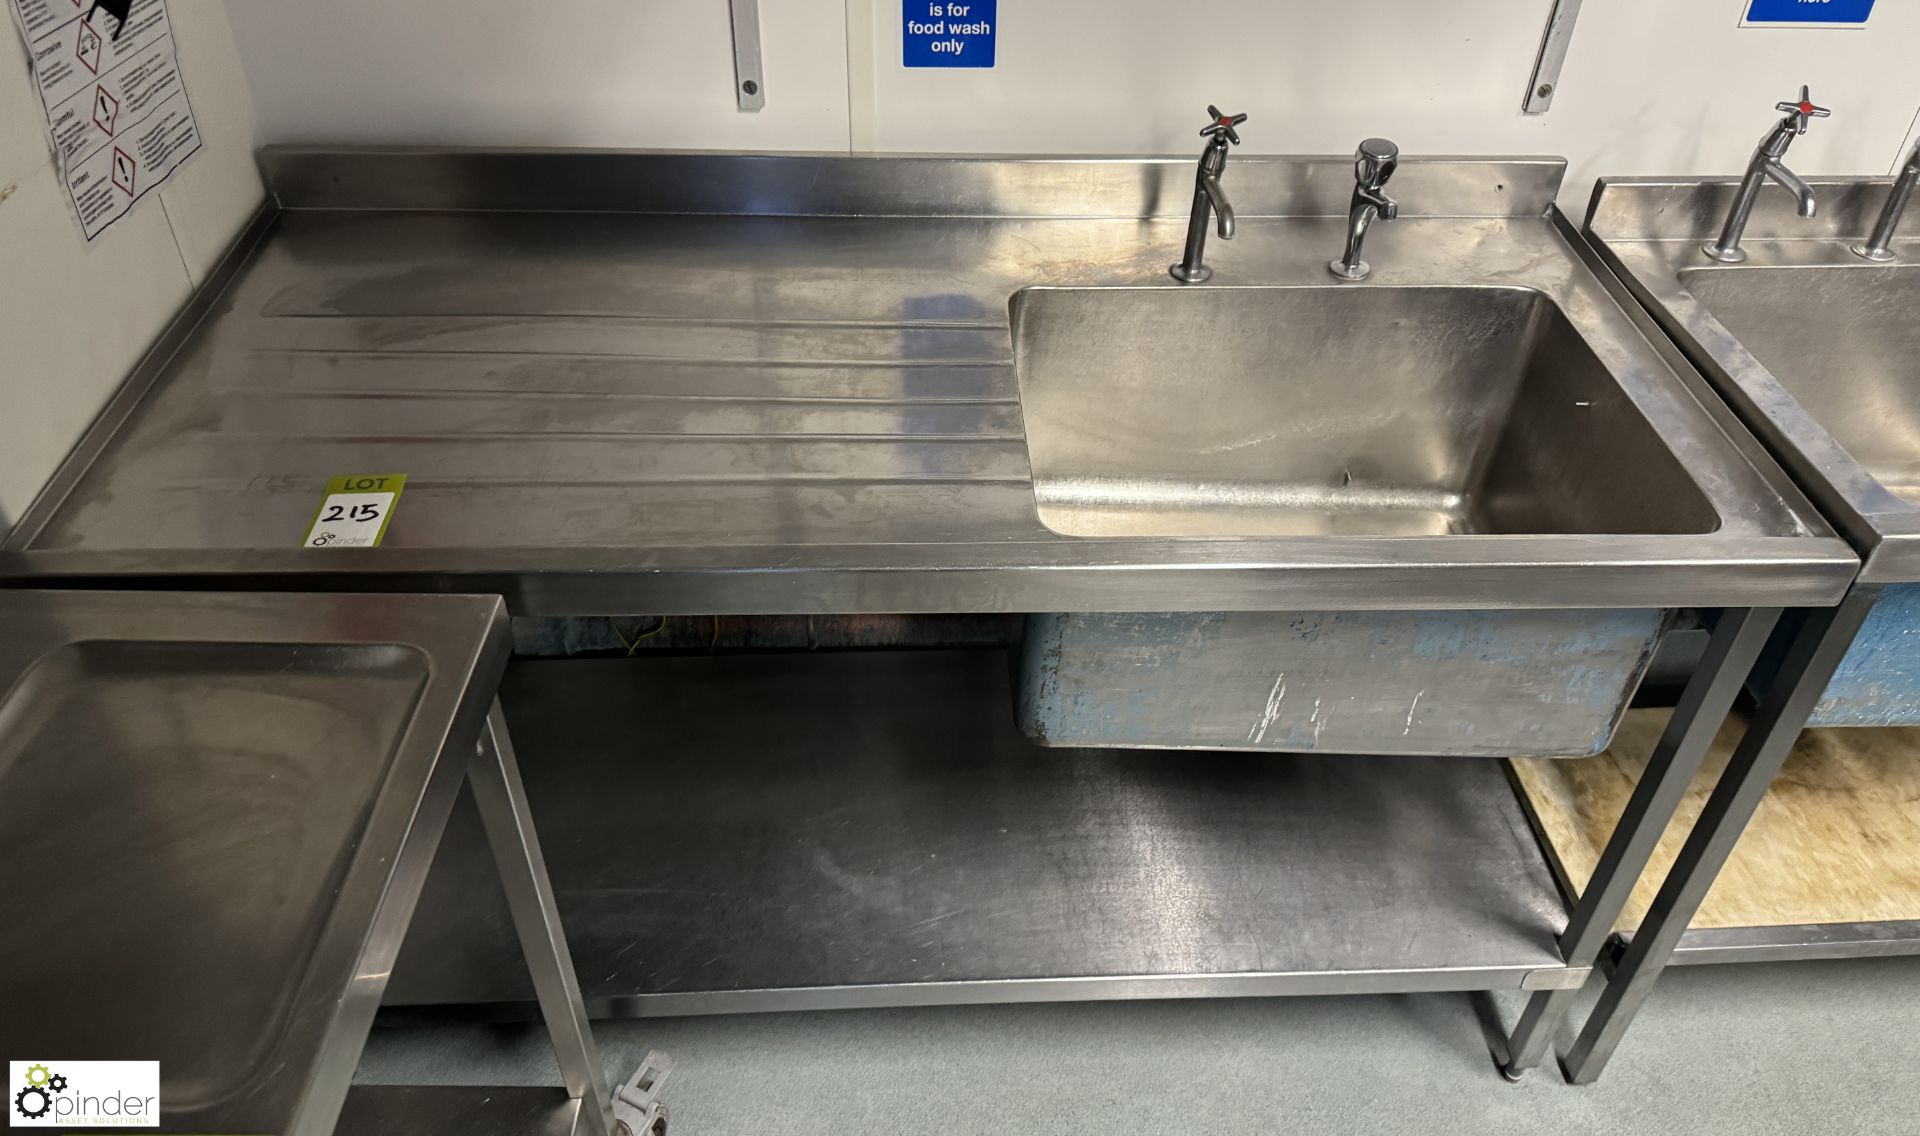 Stainless steel single bowl Sink, 1500mm x 700mm x 880mm (location in building - level 23 kitchen) - Bild 2 aus 4